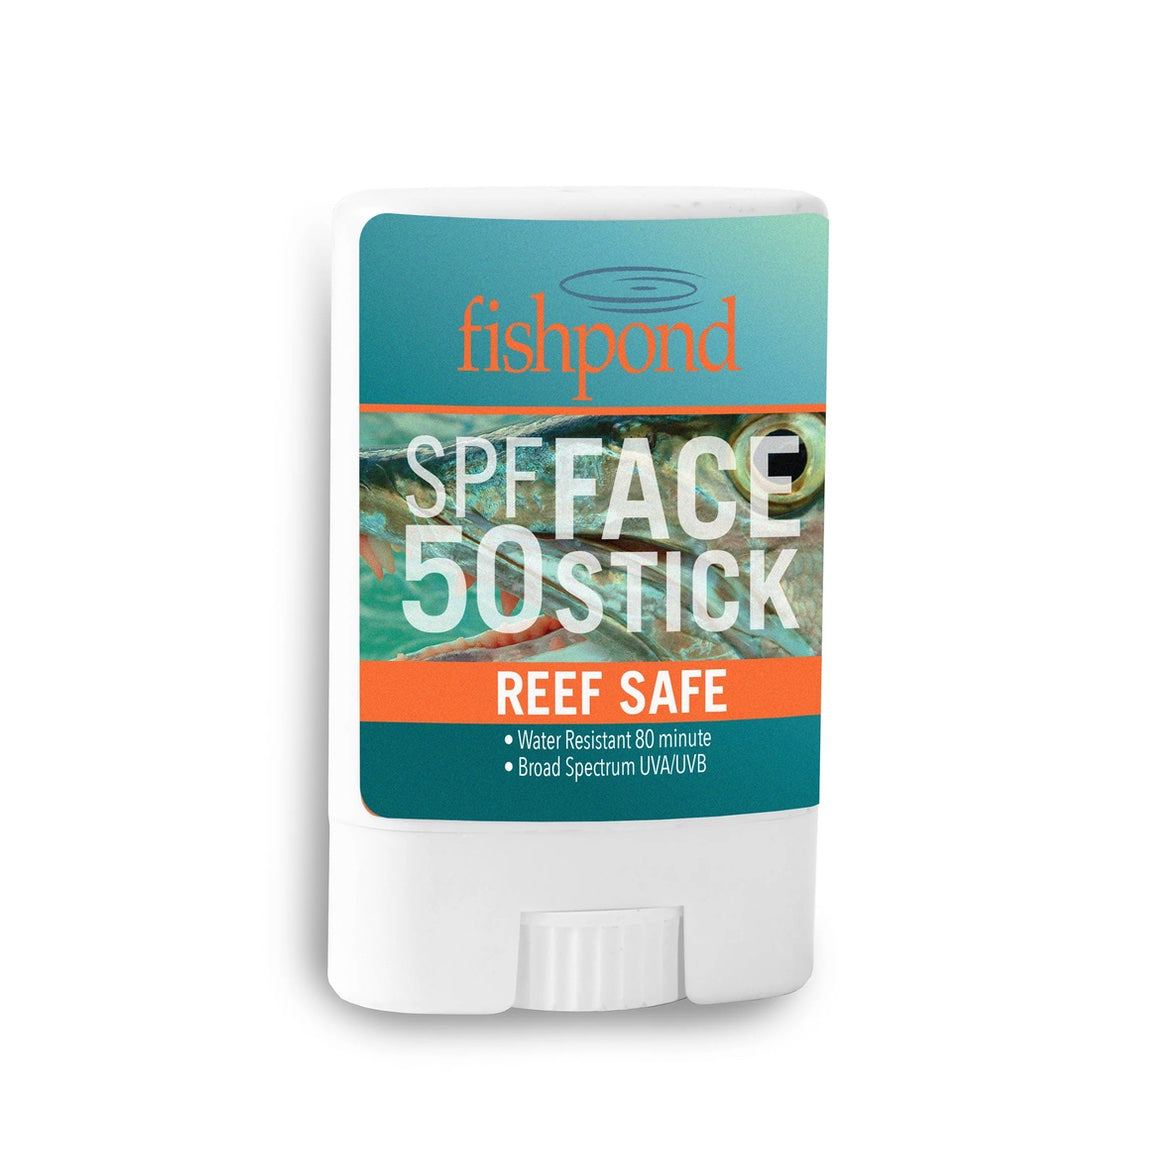 Fishpond SPF 50 Reef Safe Face Stick